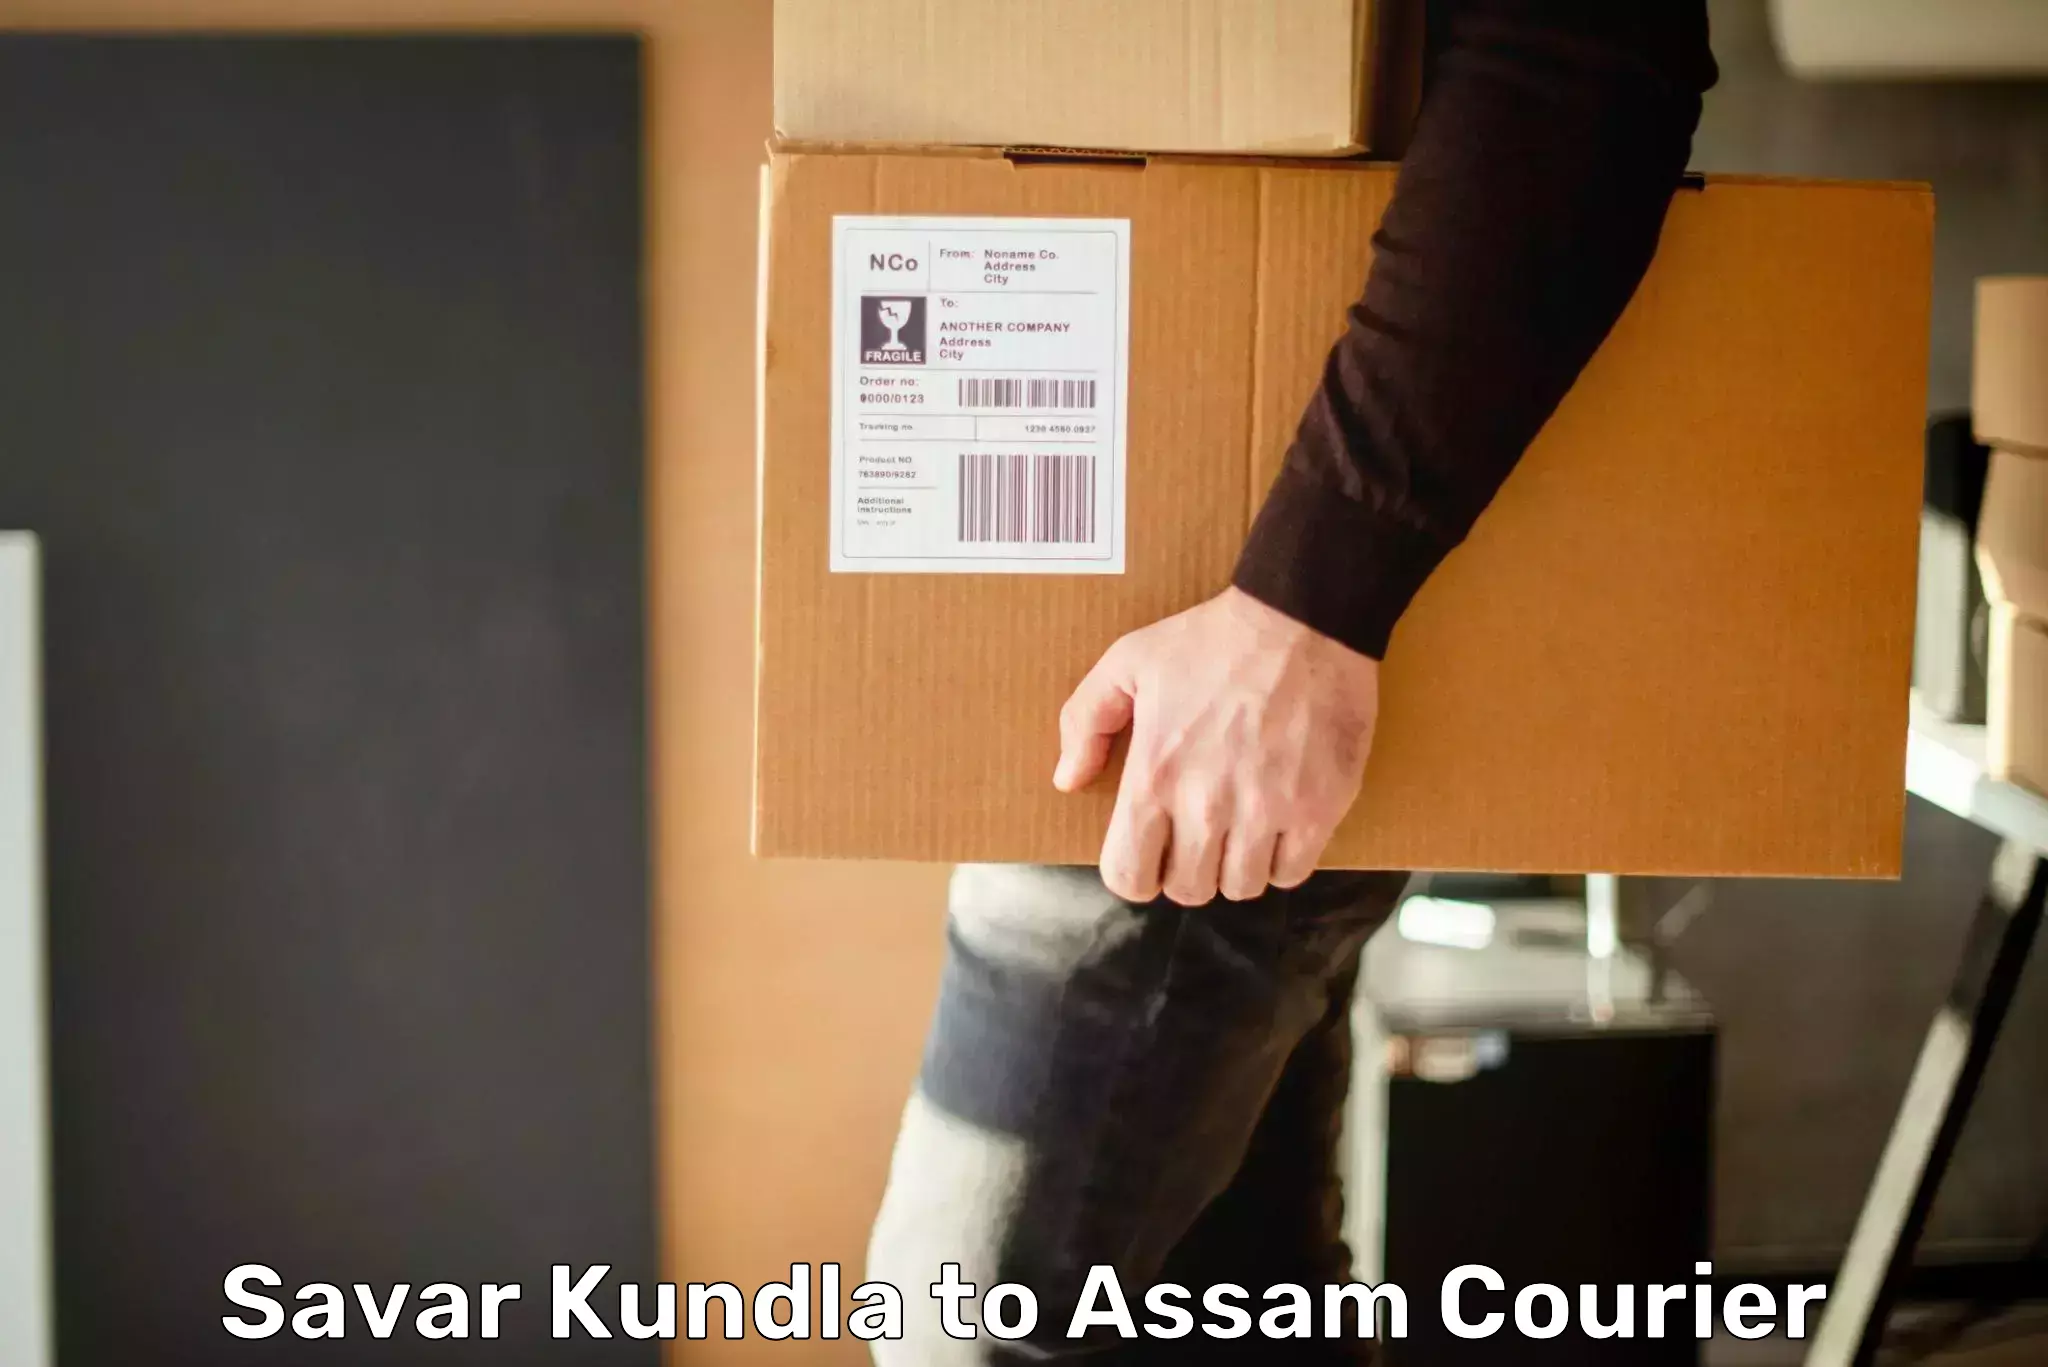 Diverse delivery methods Savar Kundla to Nagaon